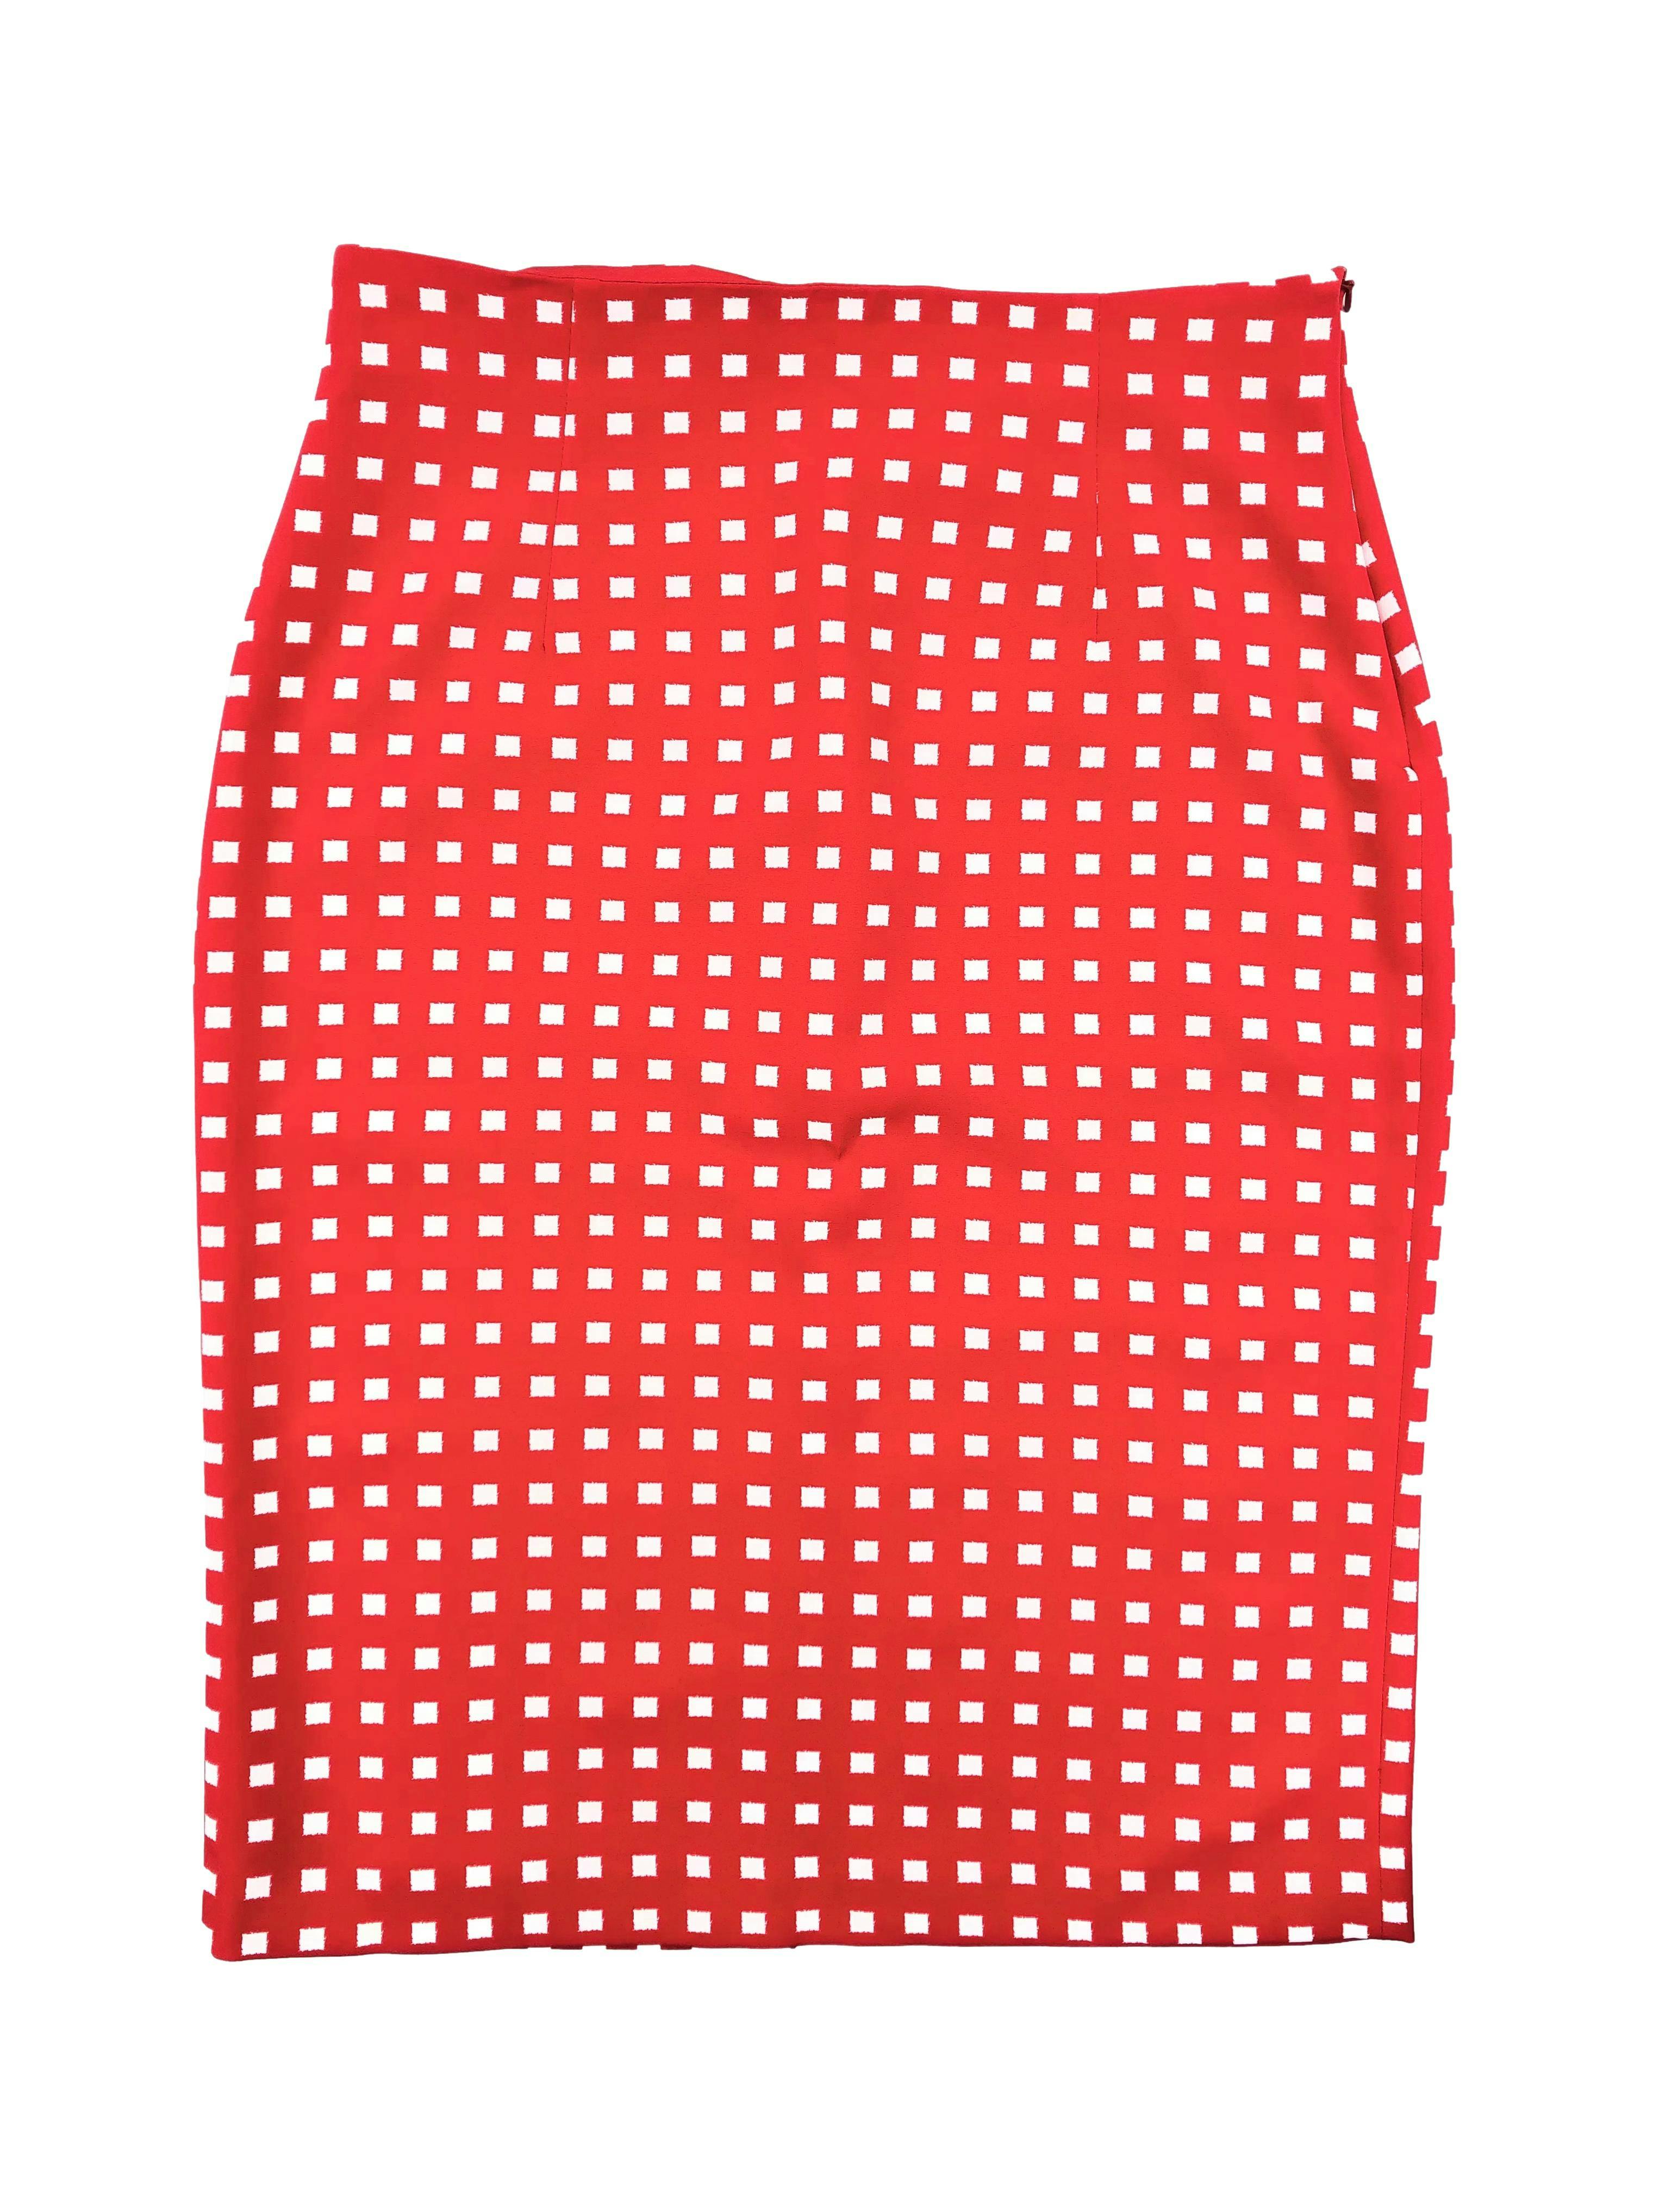 Falda tubo Zara tela plana roja con cuadrados blancos, cierre invisible lateral y abertura posterior en basta. Cintura 78cm Largo 66cm